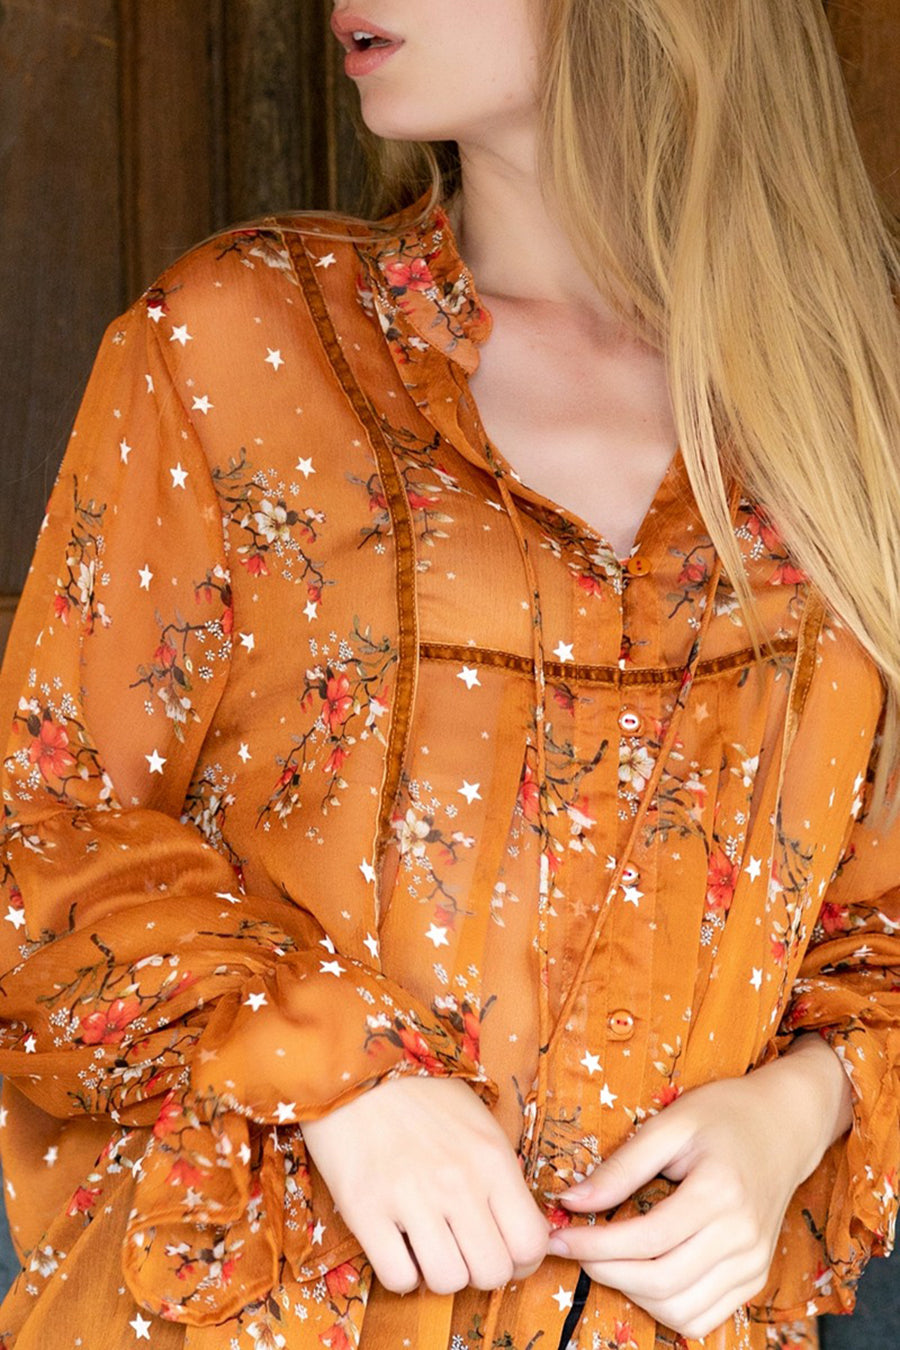 Γυναικείο πουκάμισο Zuzanna, Πορτοκάλι 3